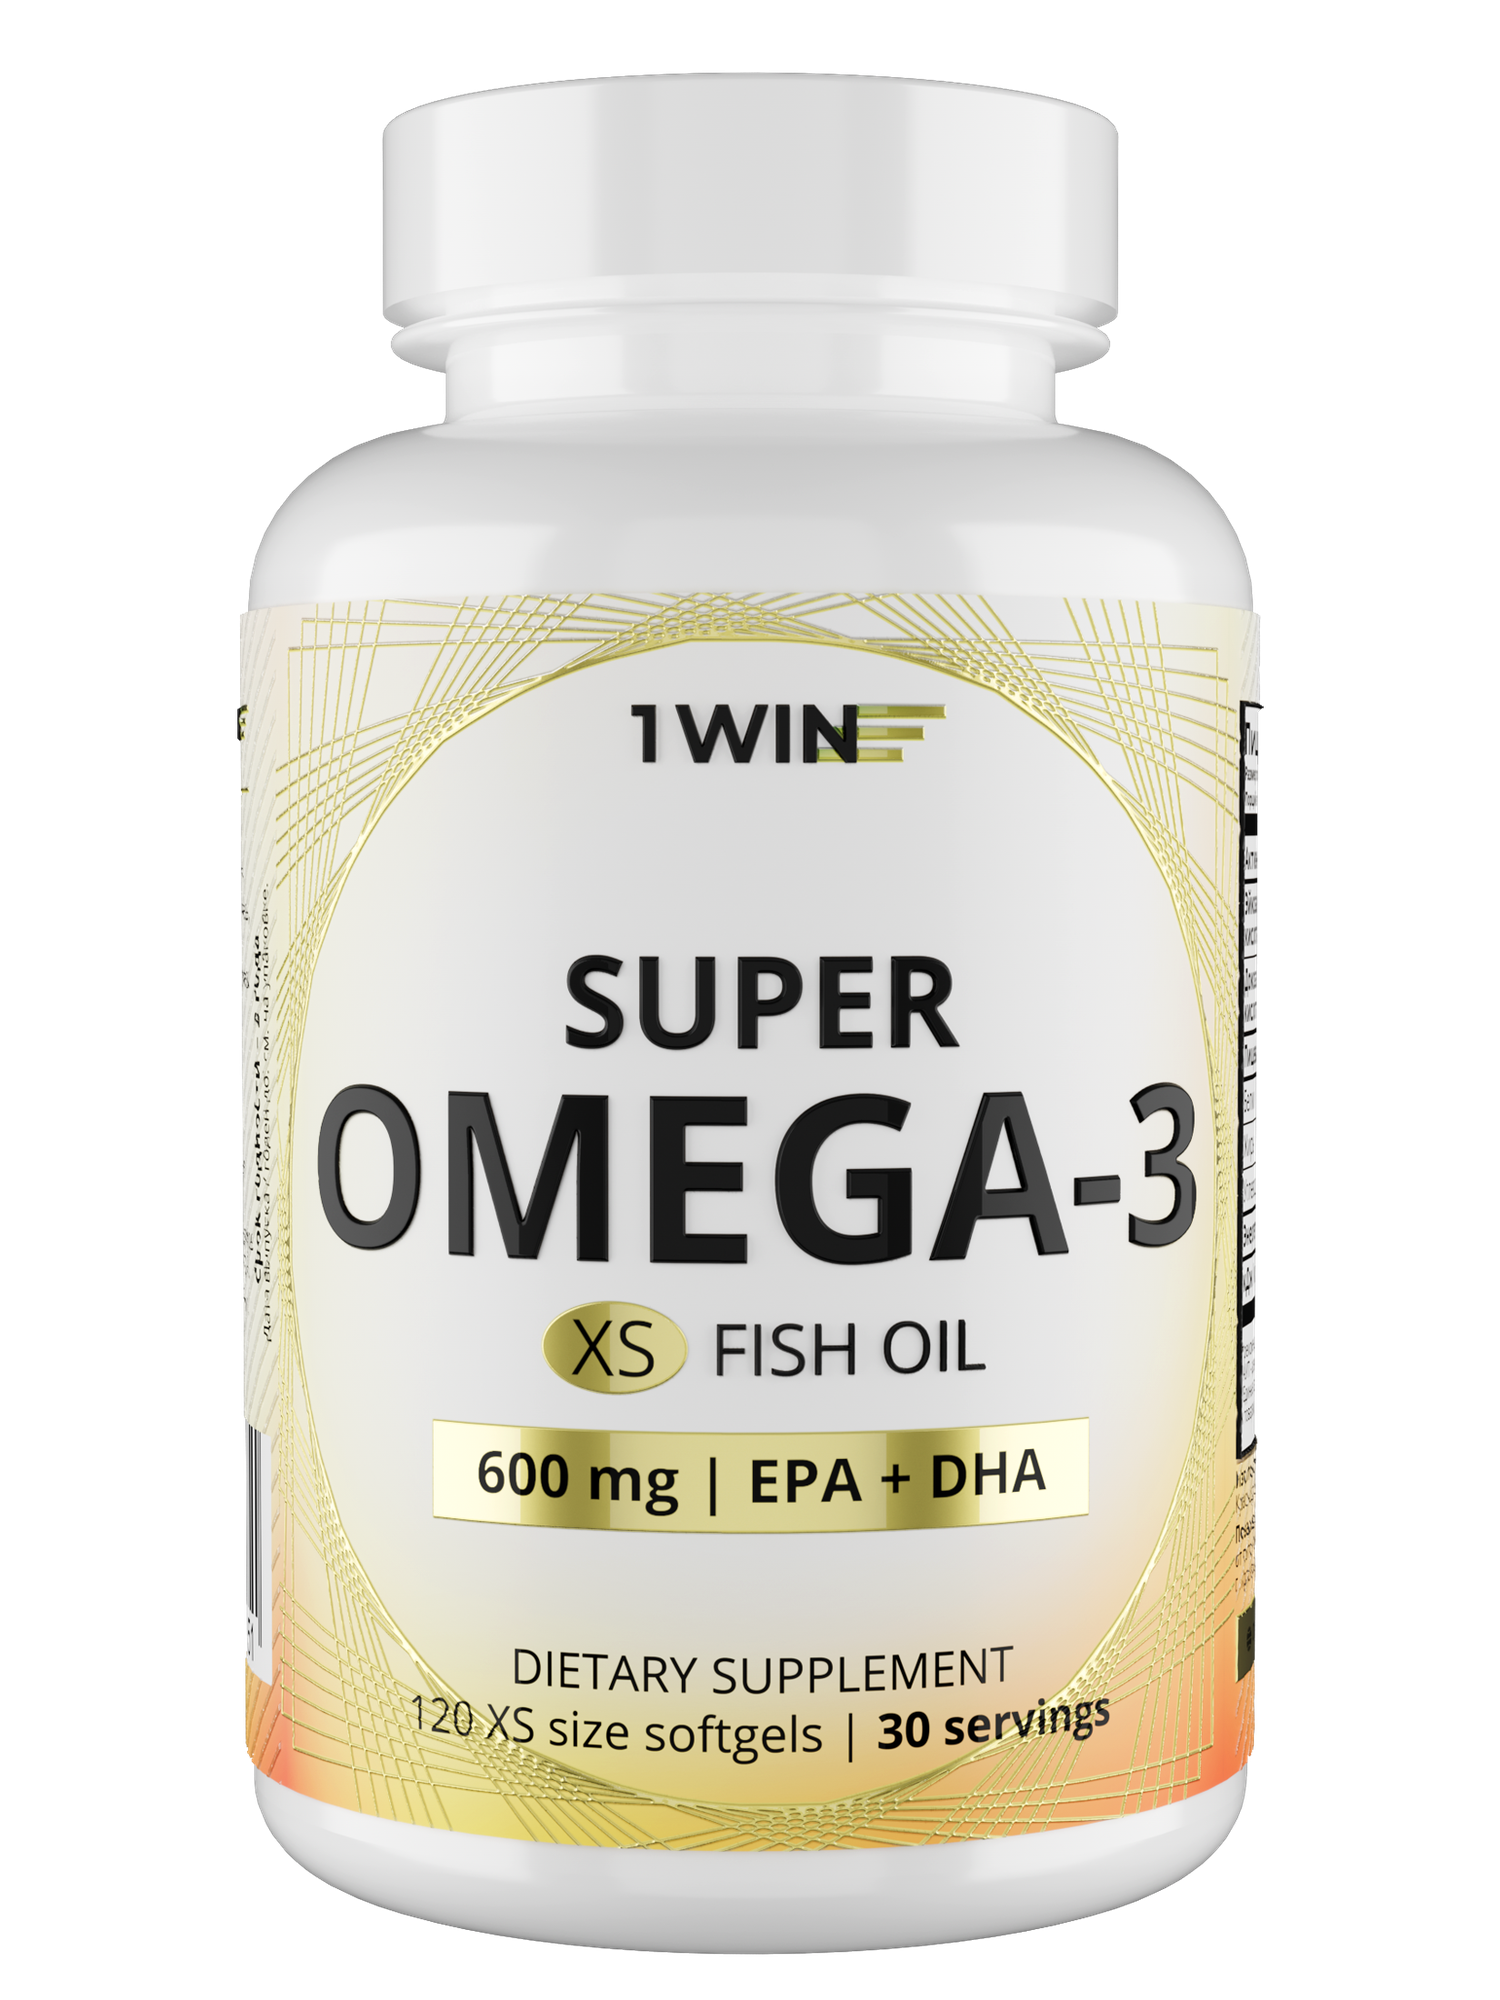 Super Omega-3 XS